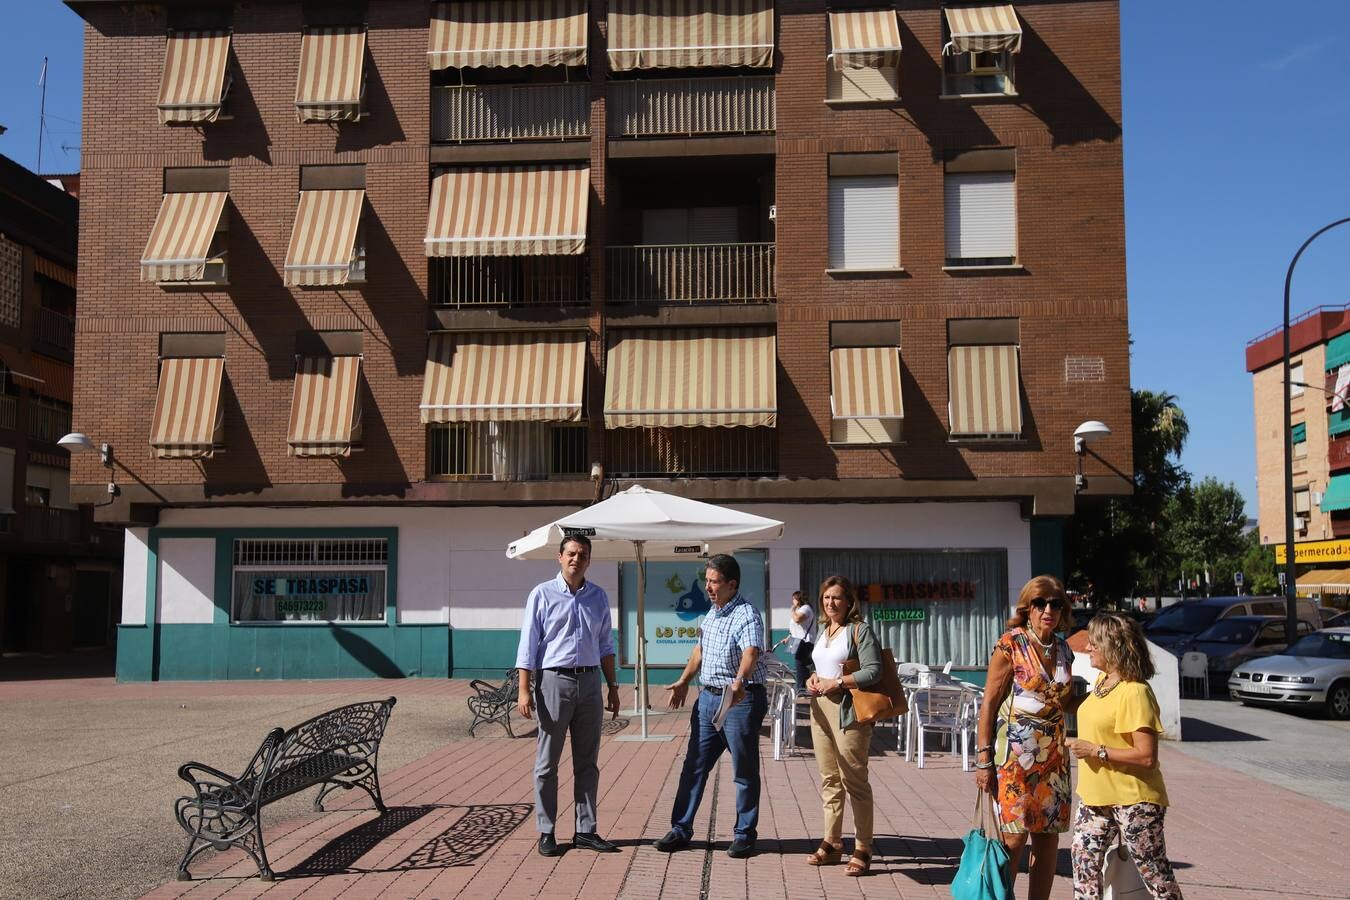 La visita de José María Bellido al barrio cordobés de Levante, en imágenes